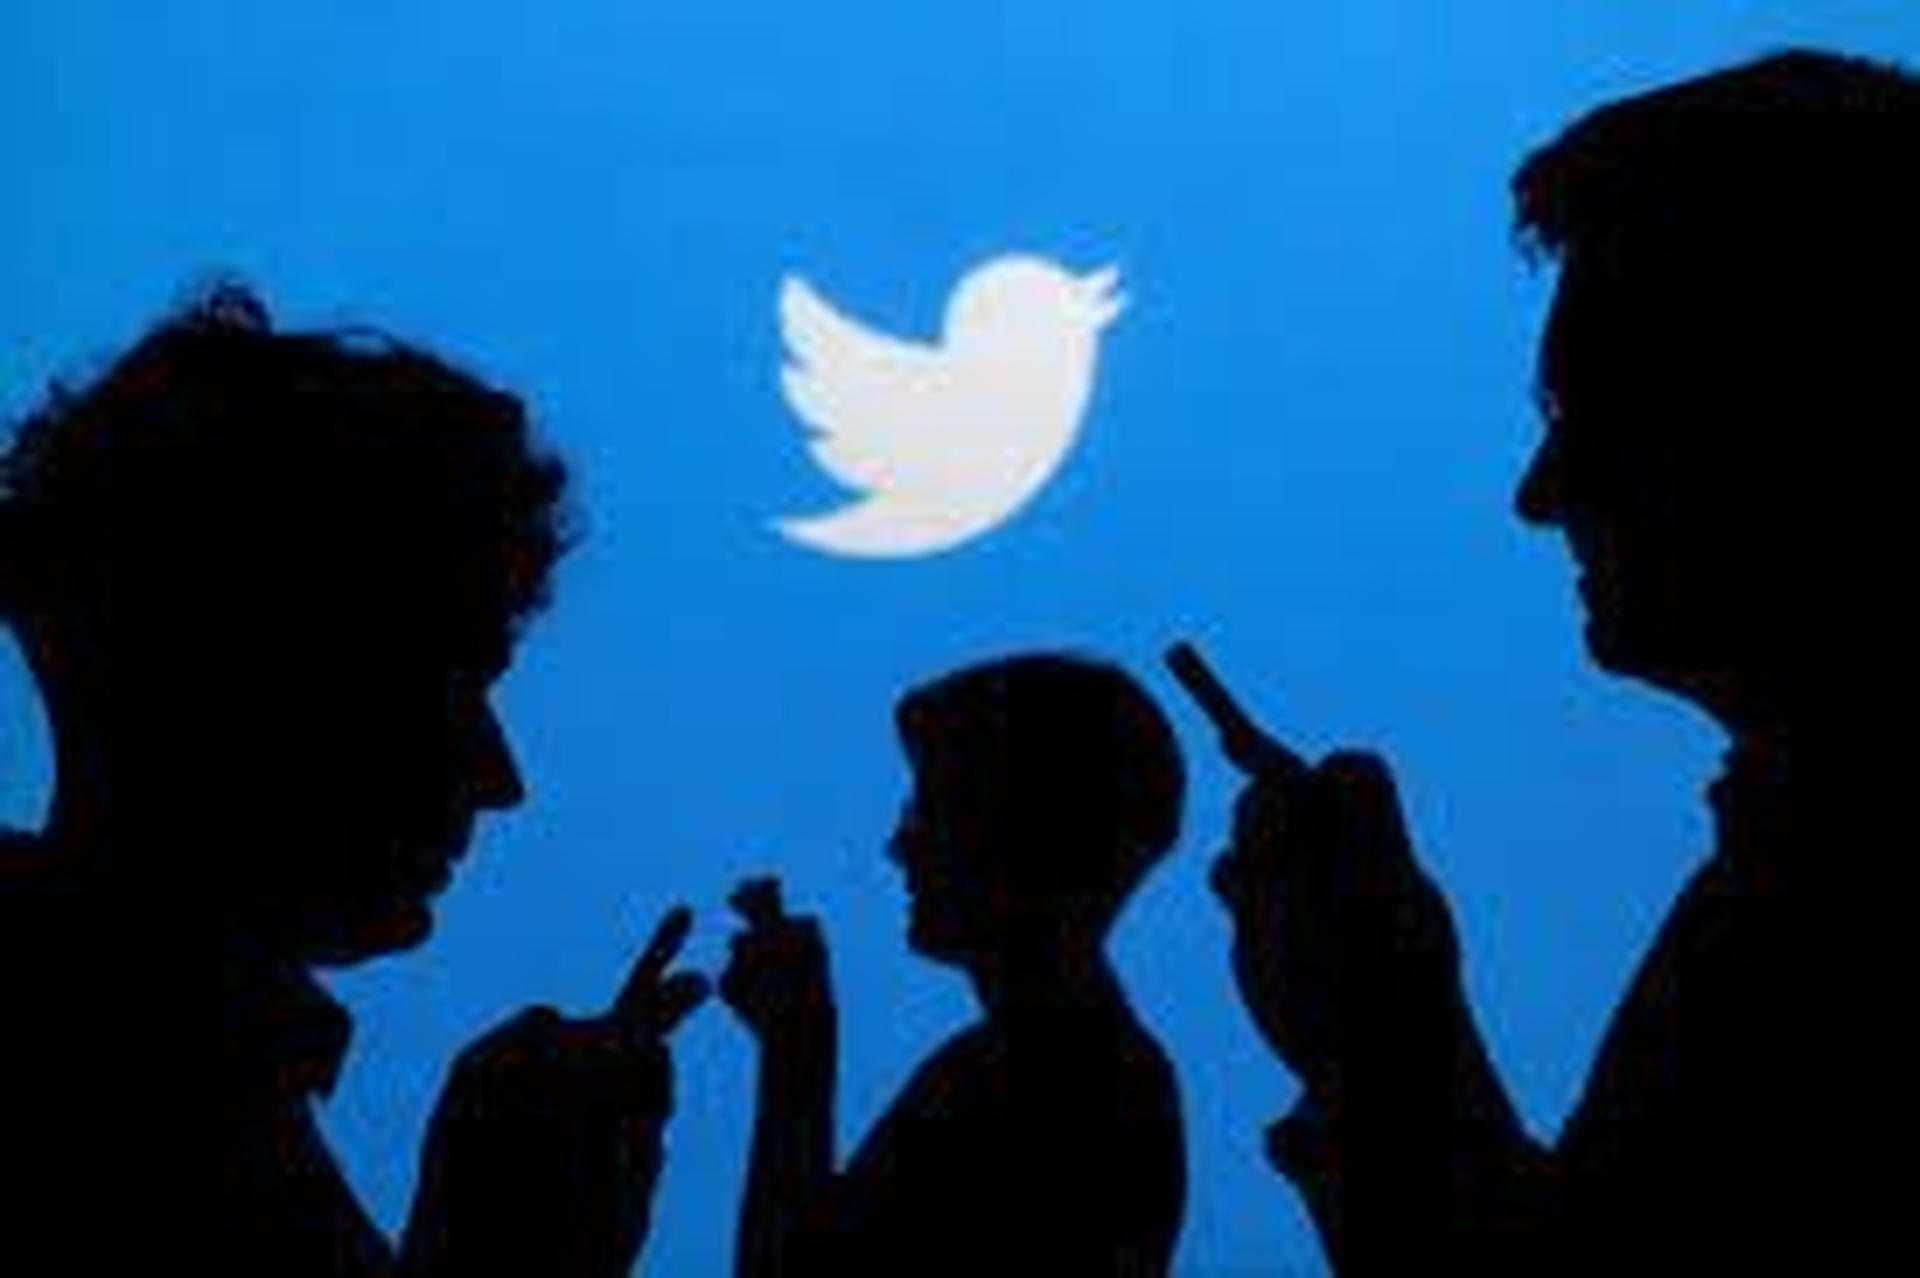 В этой статье мы расскажем о том, как Twitter заплатит 150 миллионов долларов за нарушение конфиденциальности после использования данных безопасности пользователей для таргетированной рекламы в нарушение приказа Федеральной торговой комиссии от 2011 года.